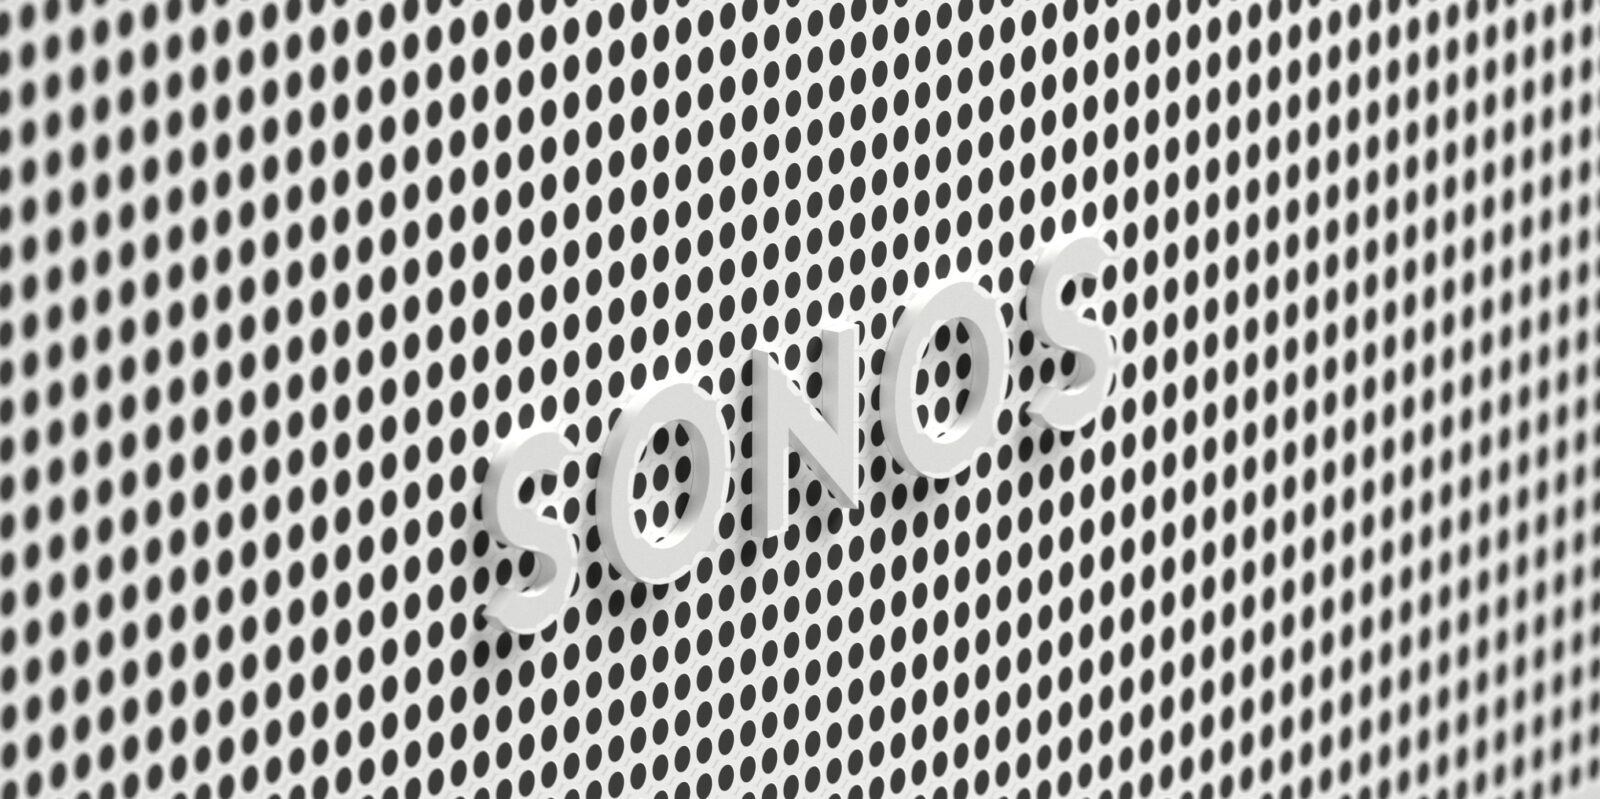 Sonos Beam Gen 2